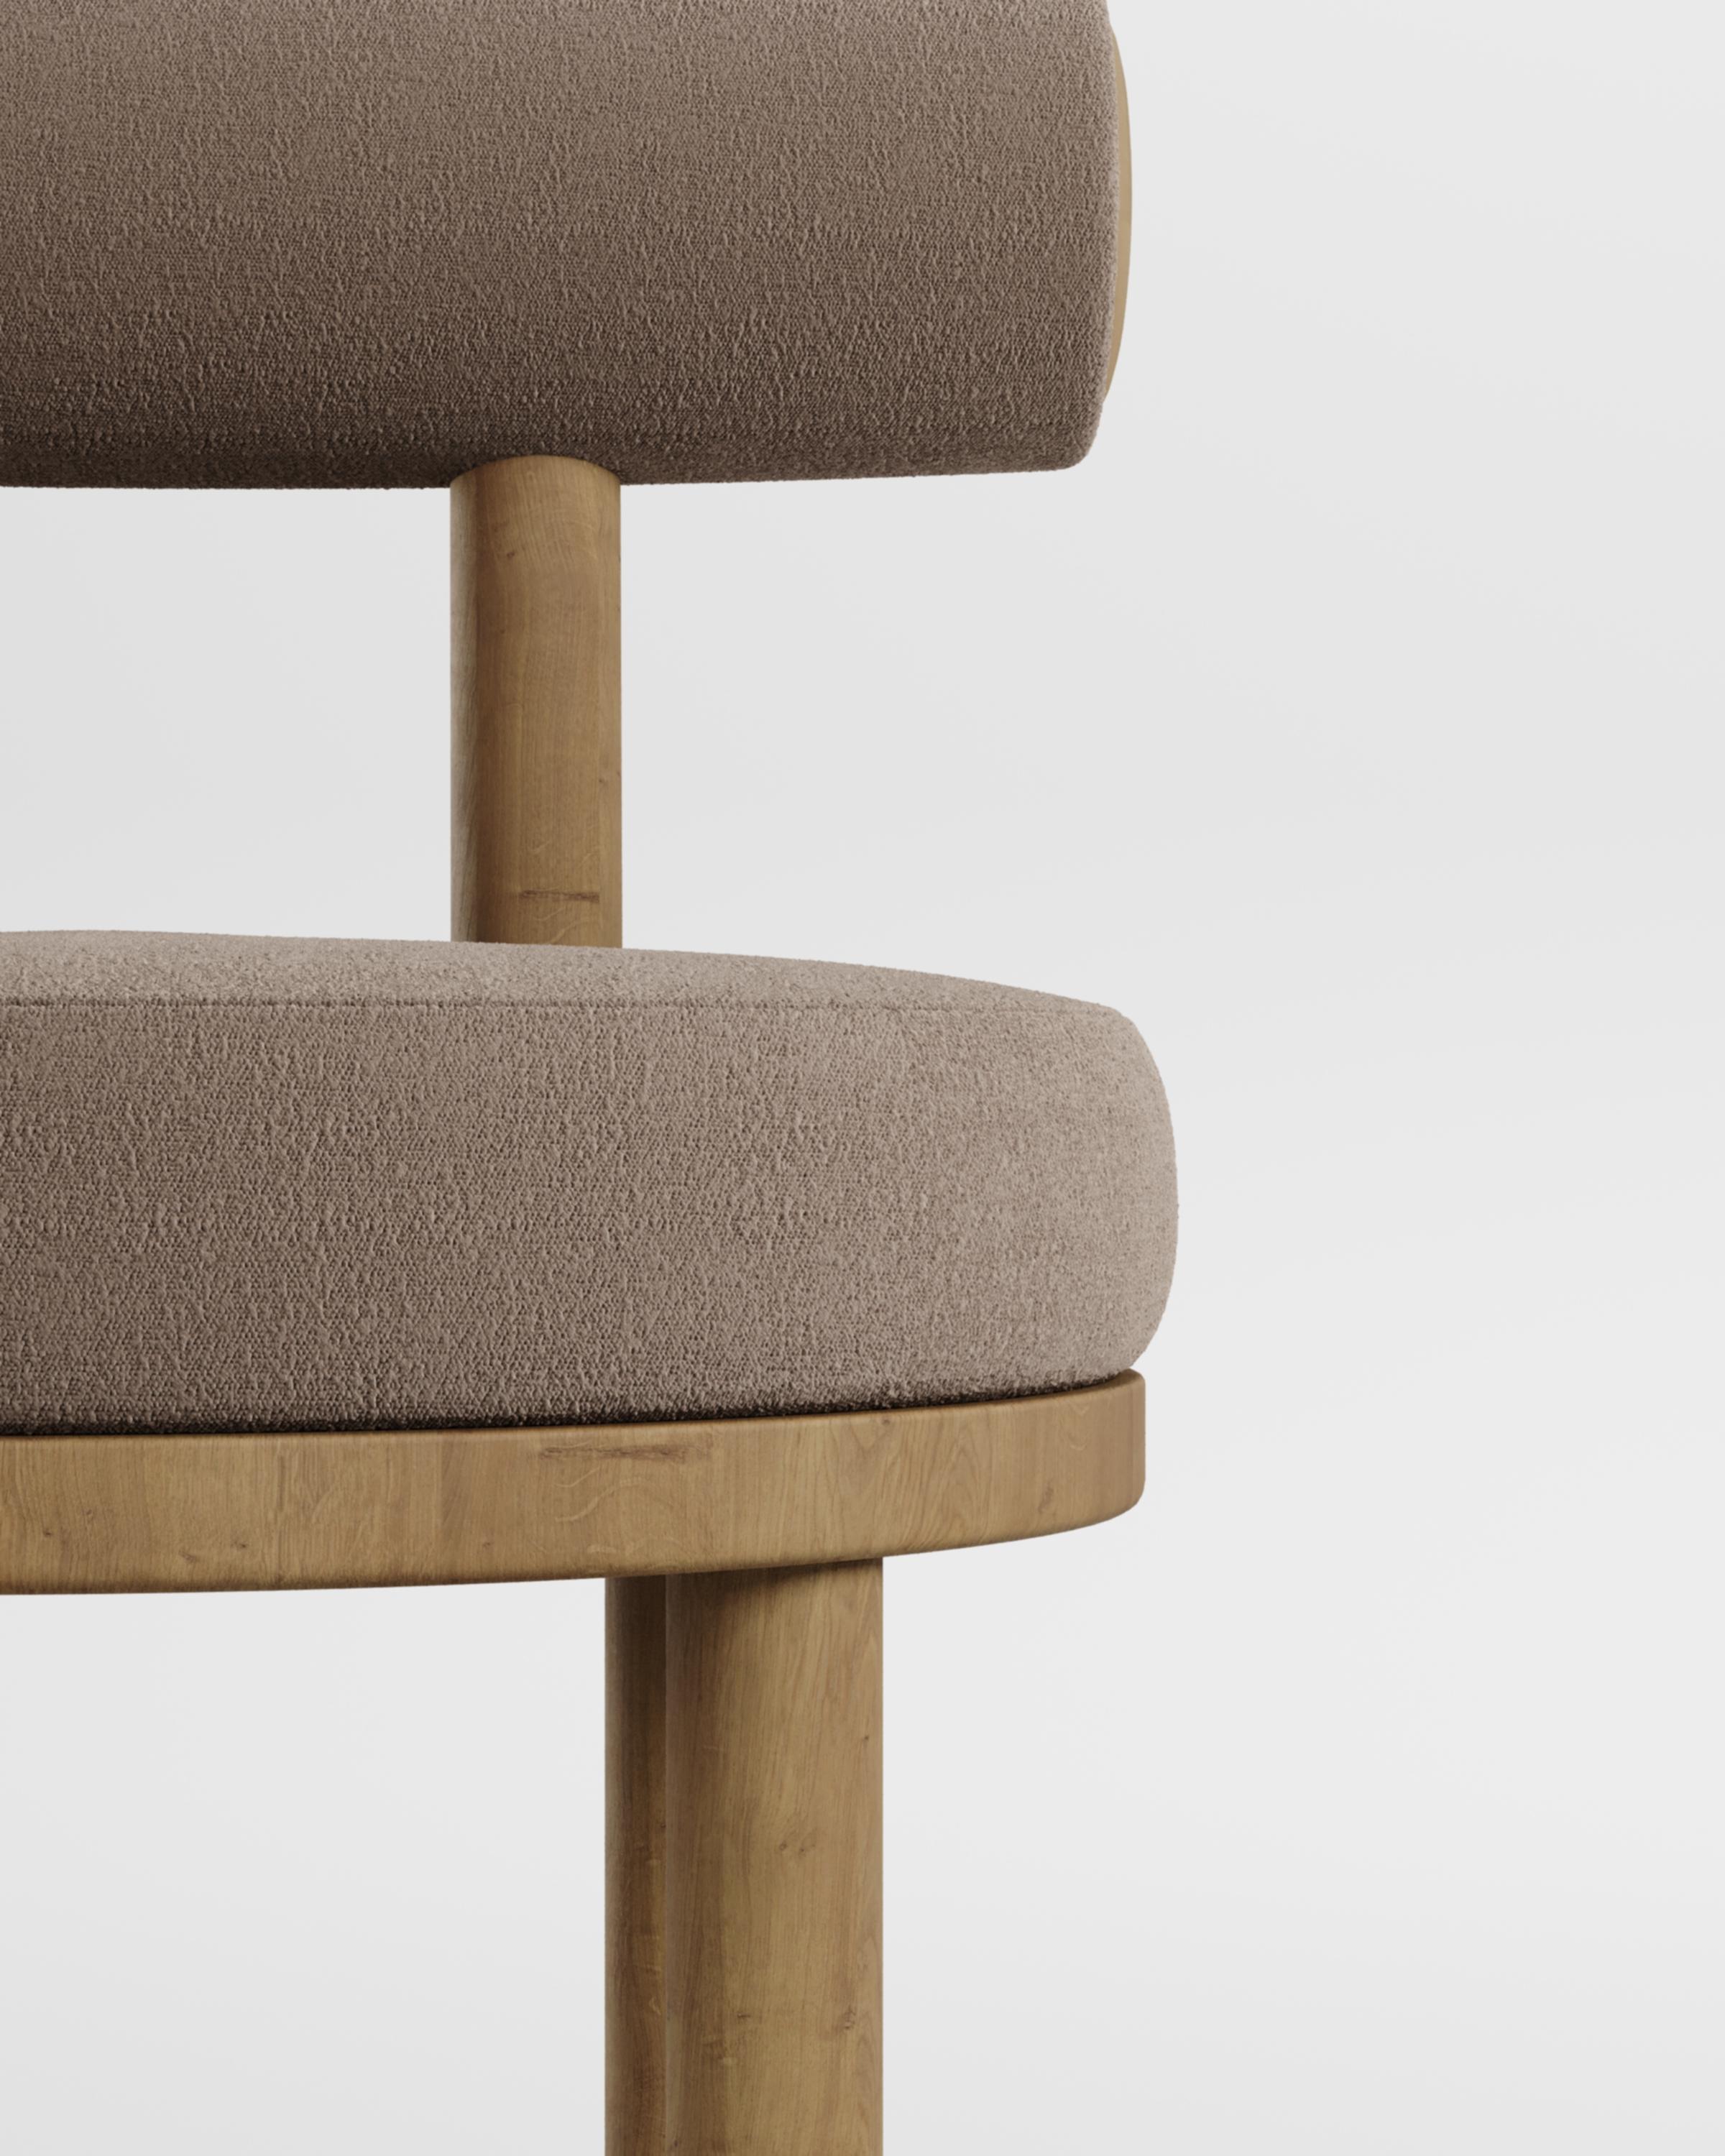 Une chaise qui allie les approches modernes et classiques du design.
Conçue pour épouser le corps, cette chaise durable et solide présente une structure de corps produite en bois massif.

Structure en bois de chêne massif et tissu